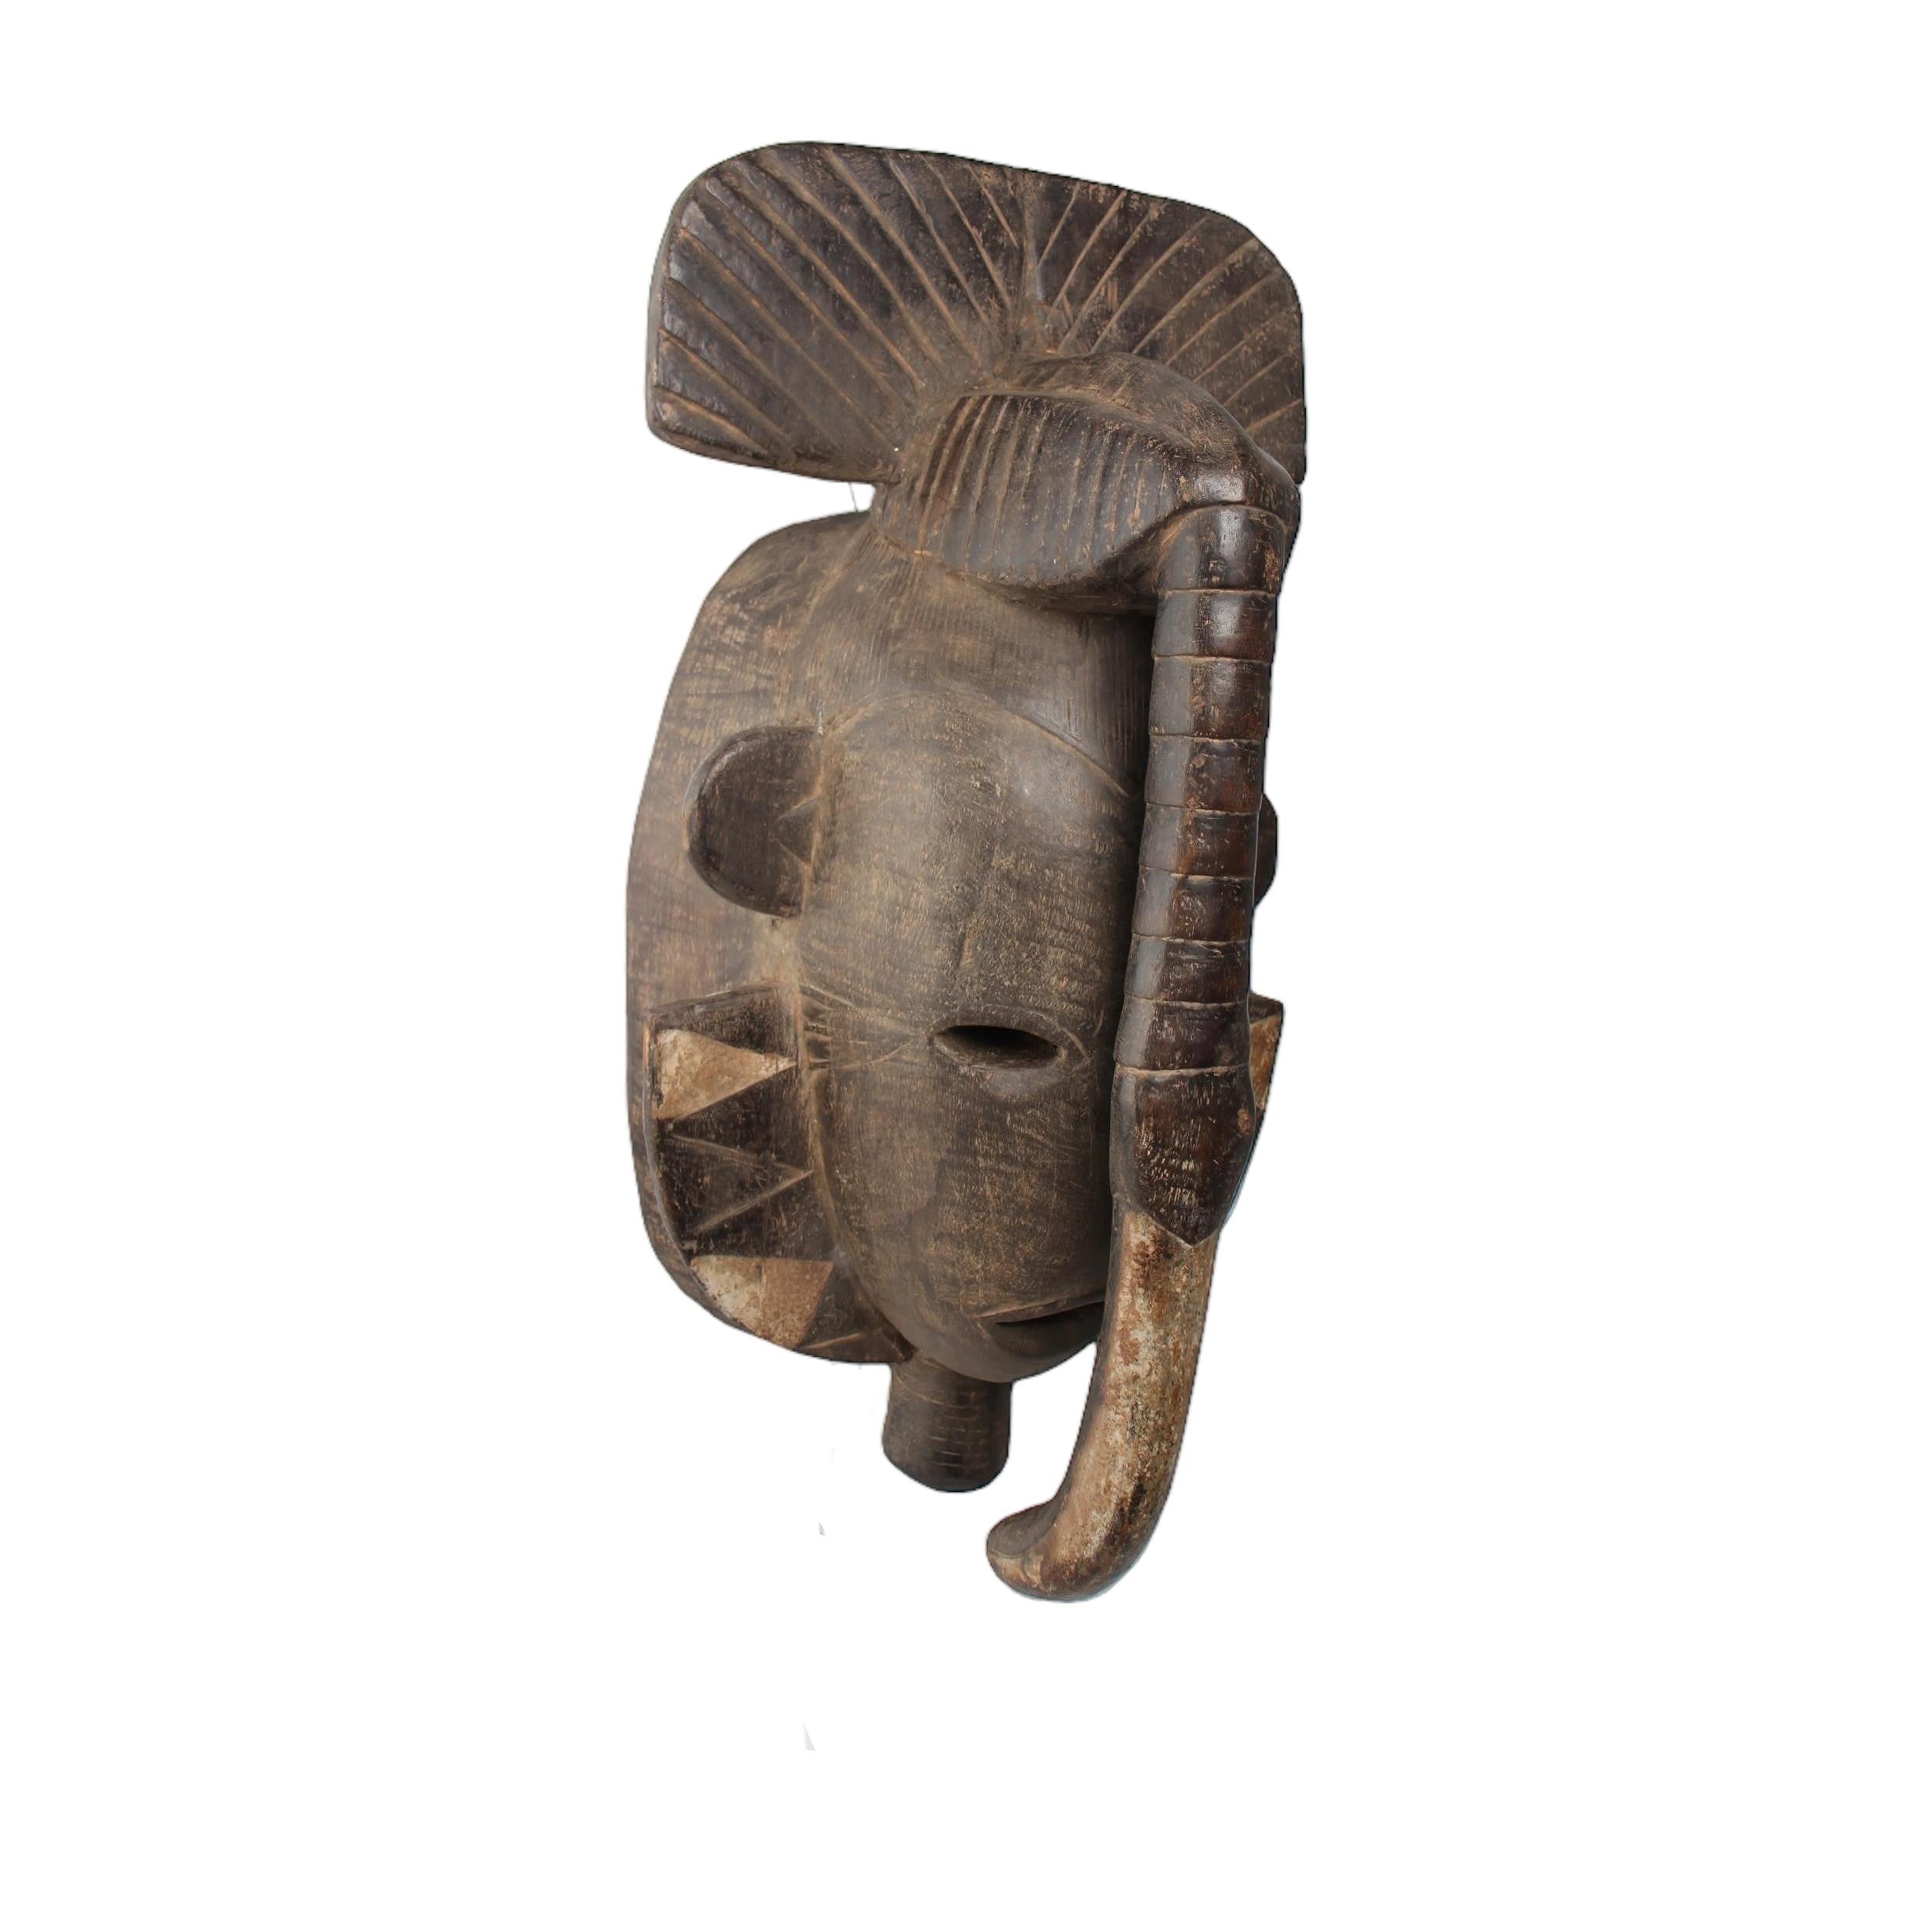 Senufo Tribe Mask ~26.0" Tall - Mask